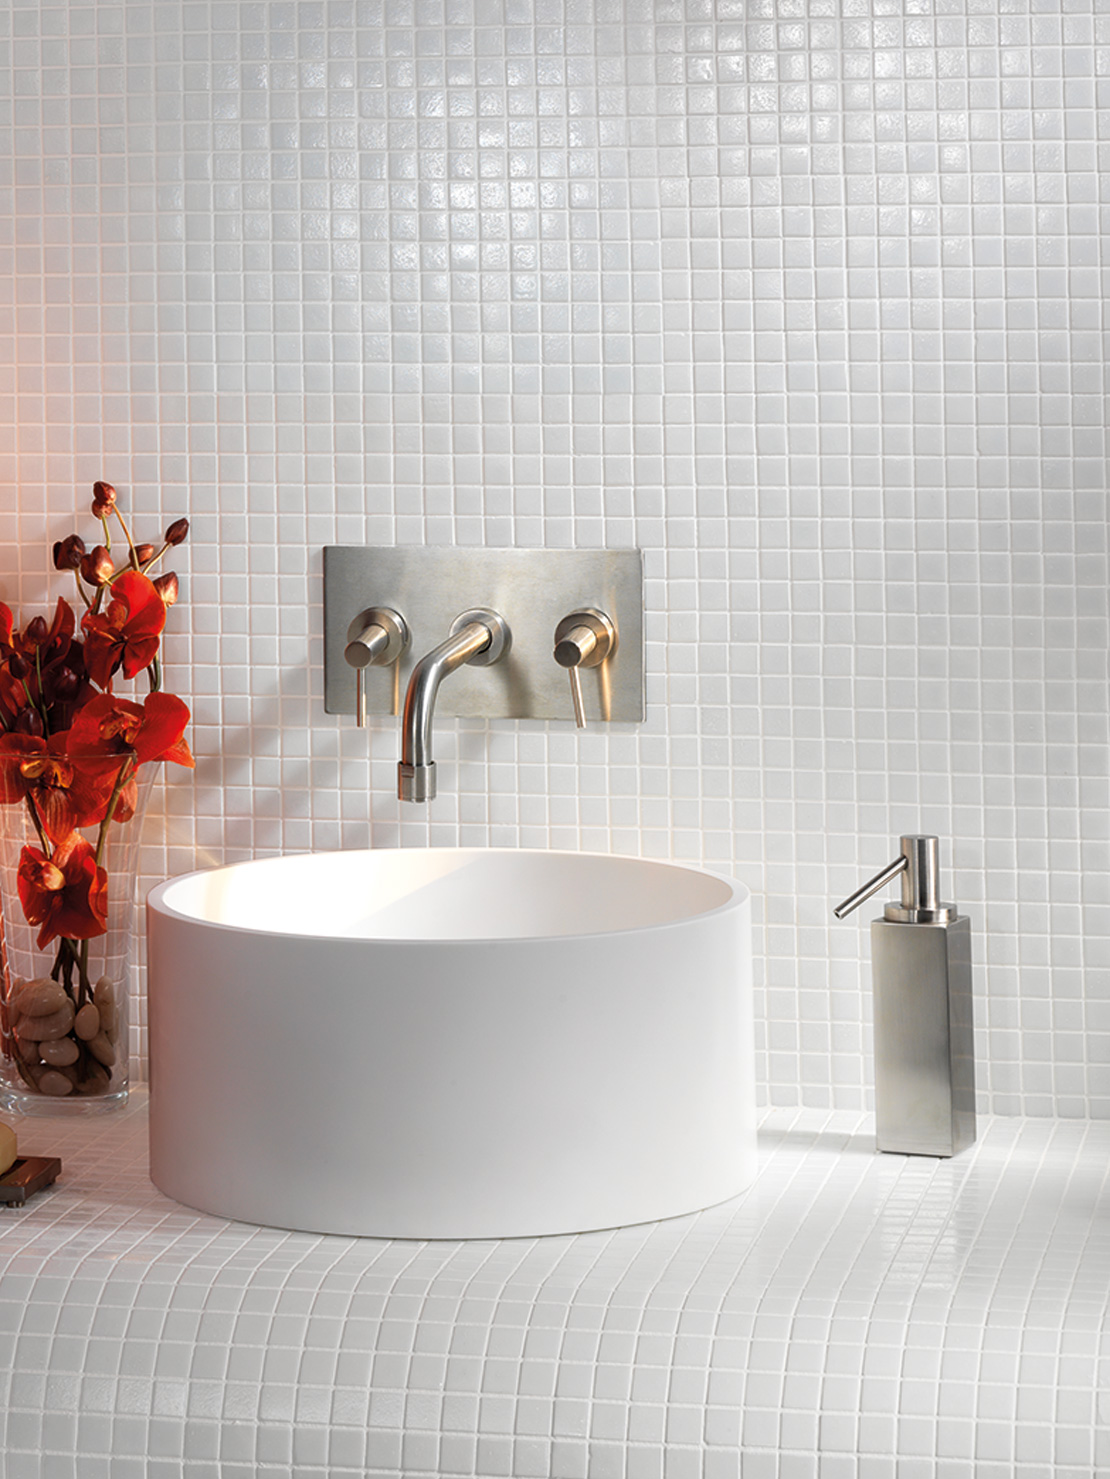 Klassisches, farbiges Badezimmer dank des einfarbigen weißen und roten Mosaiks - Inspirationen Iperceramica